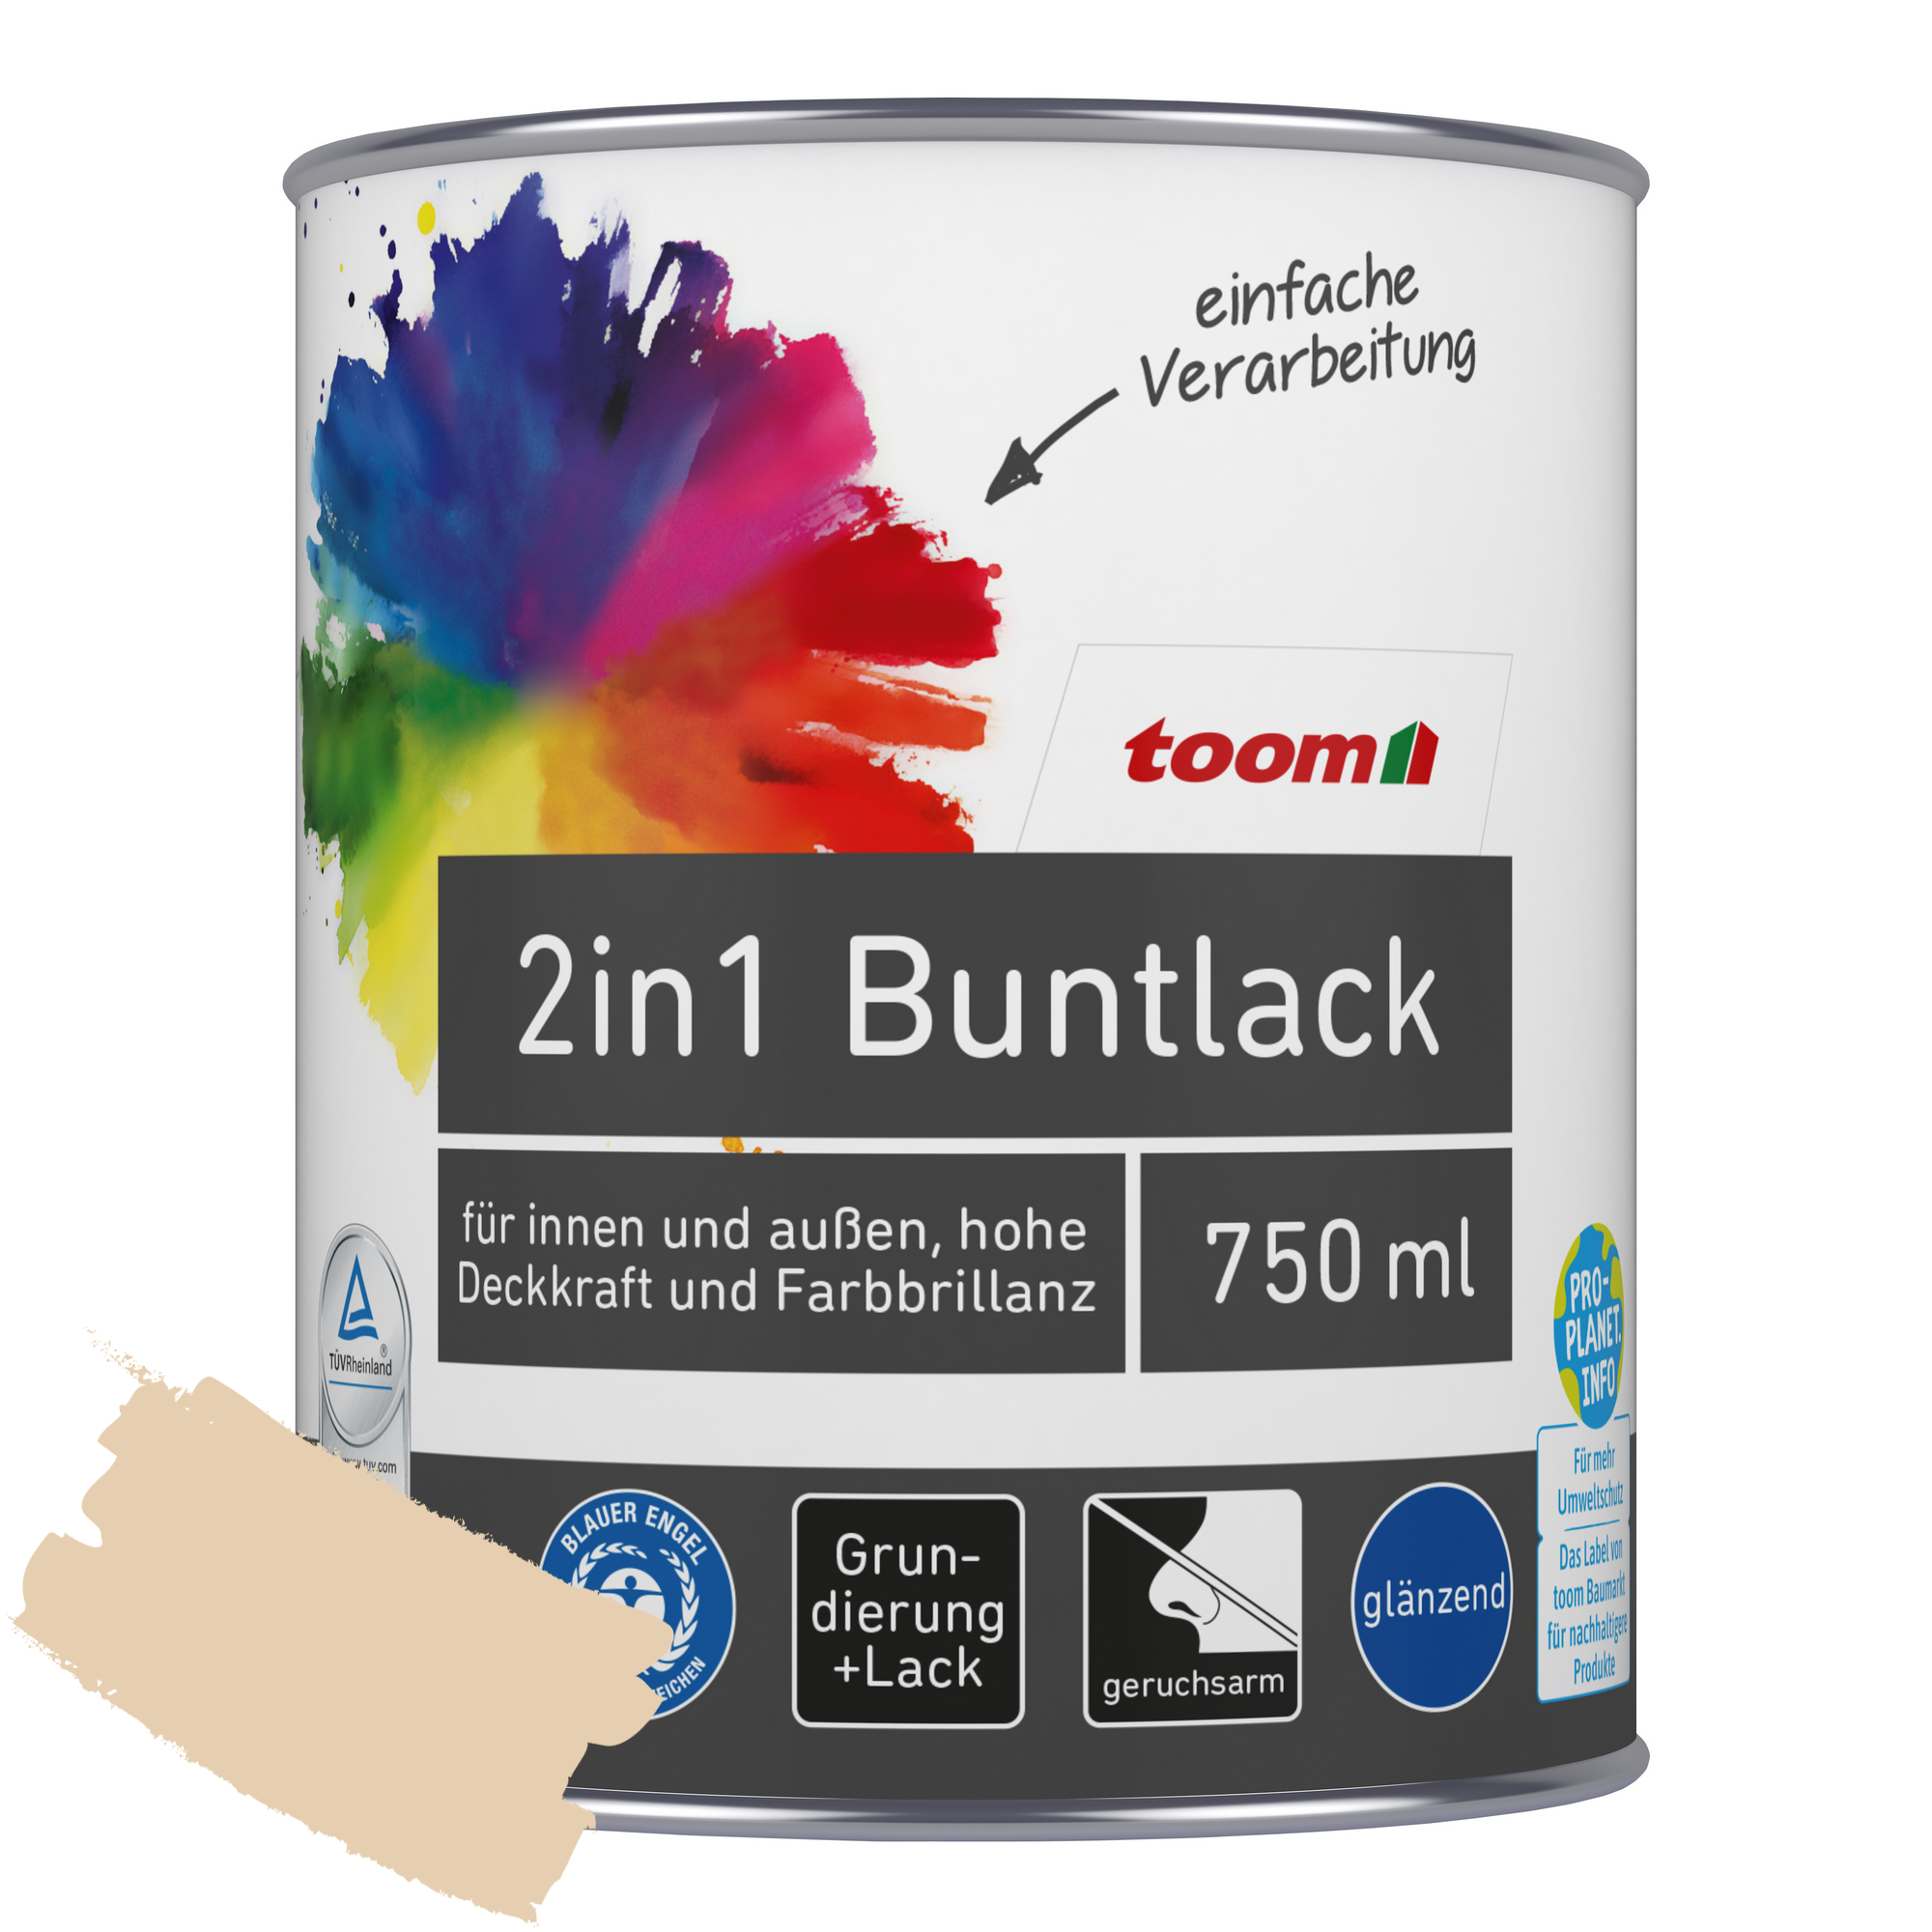 2in1 Buntlack 'Sonnenstrahl' hellelfenbein glänzend 750 ml + product picture